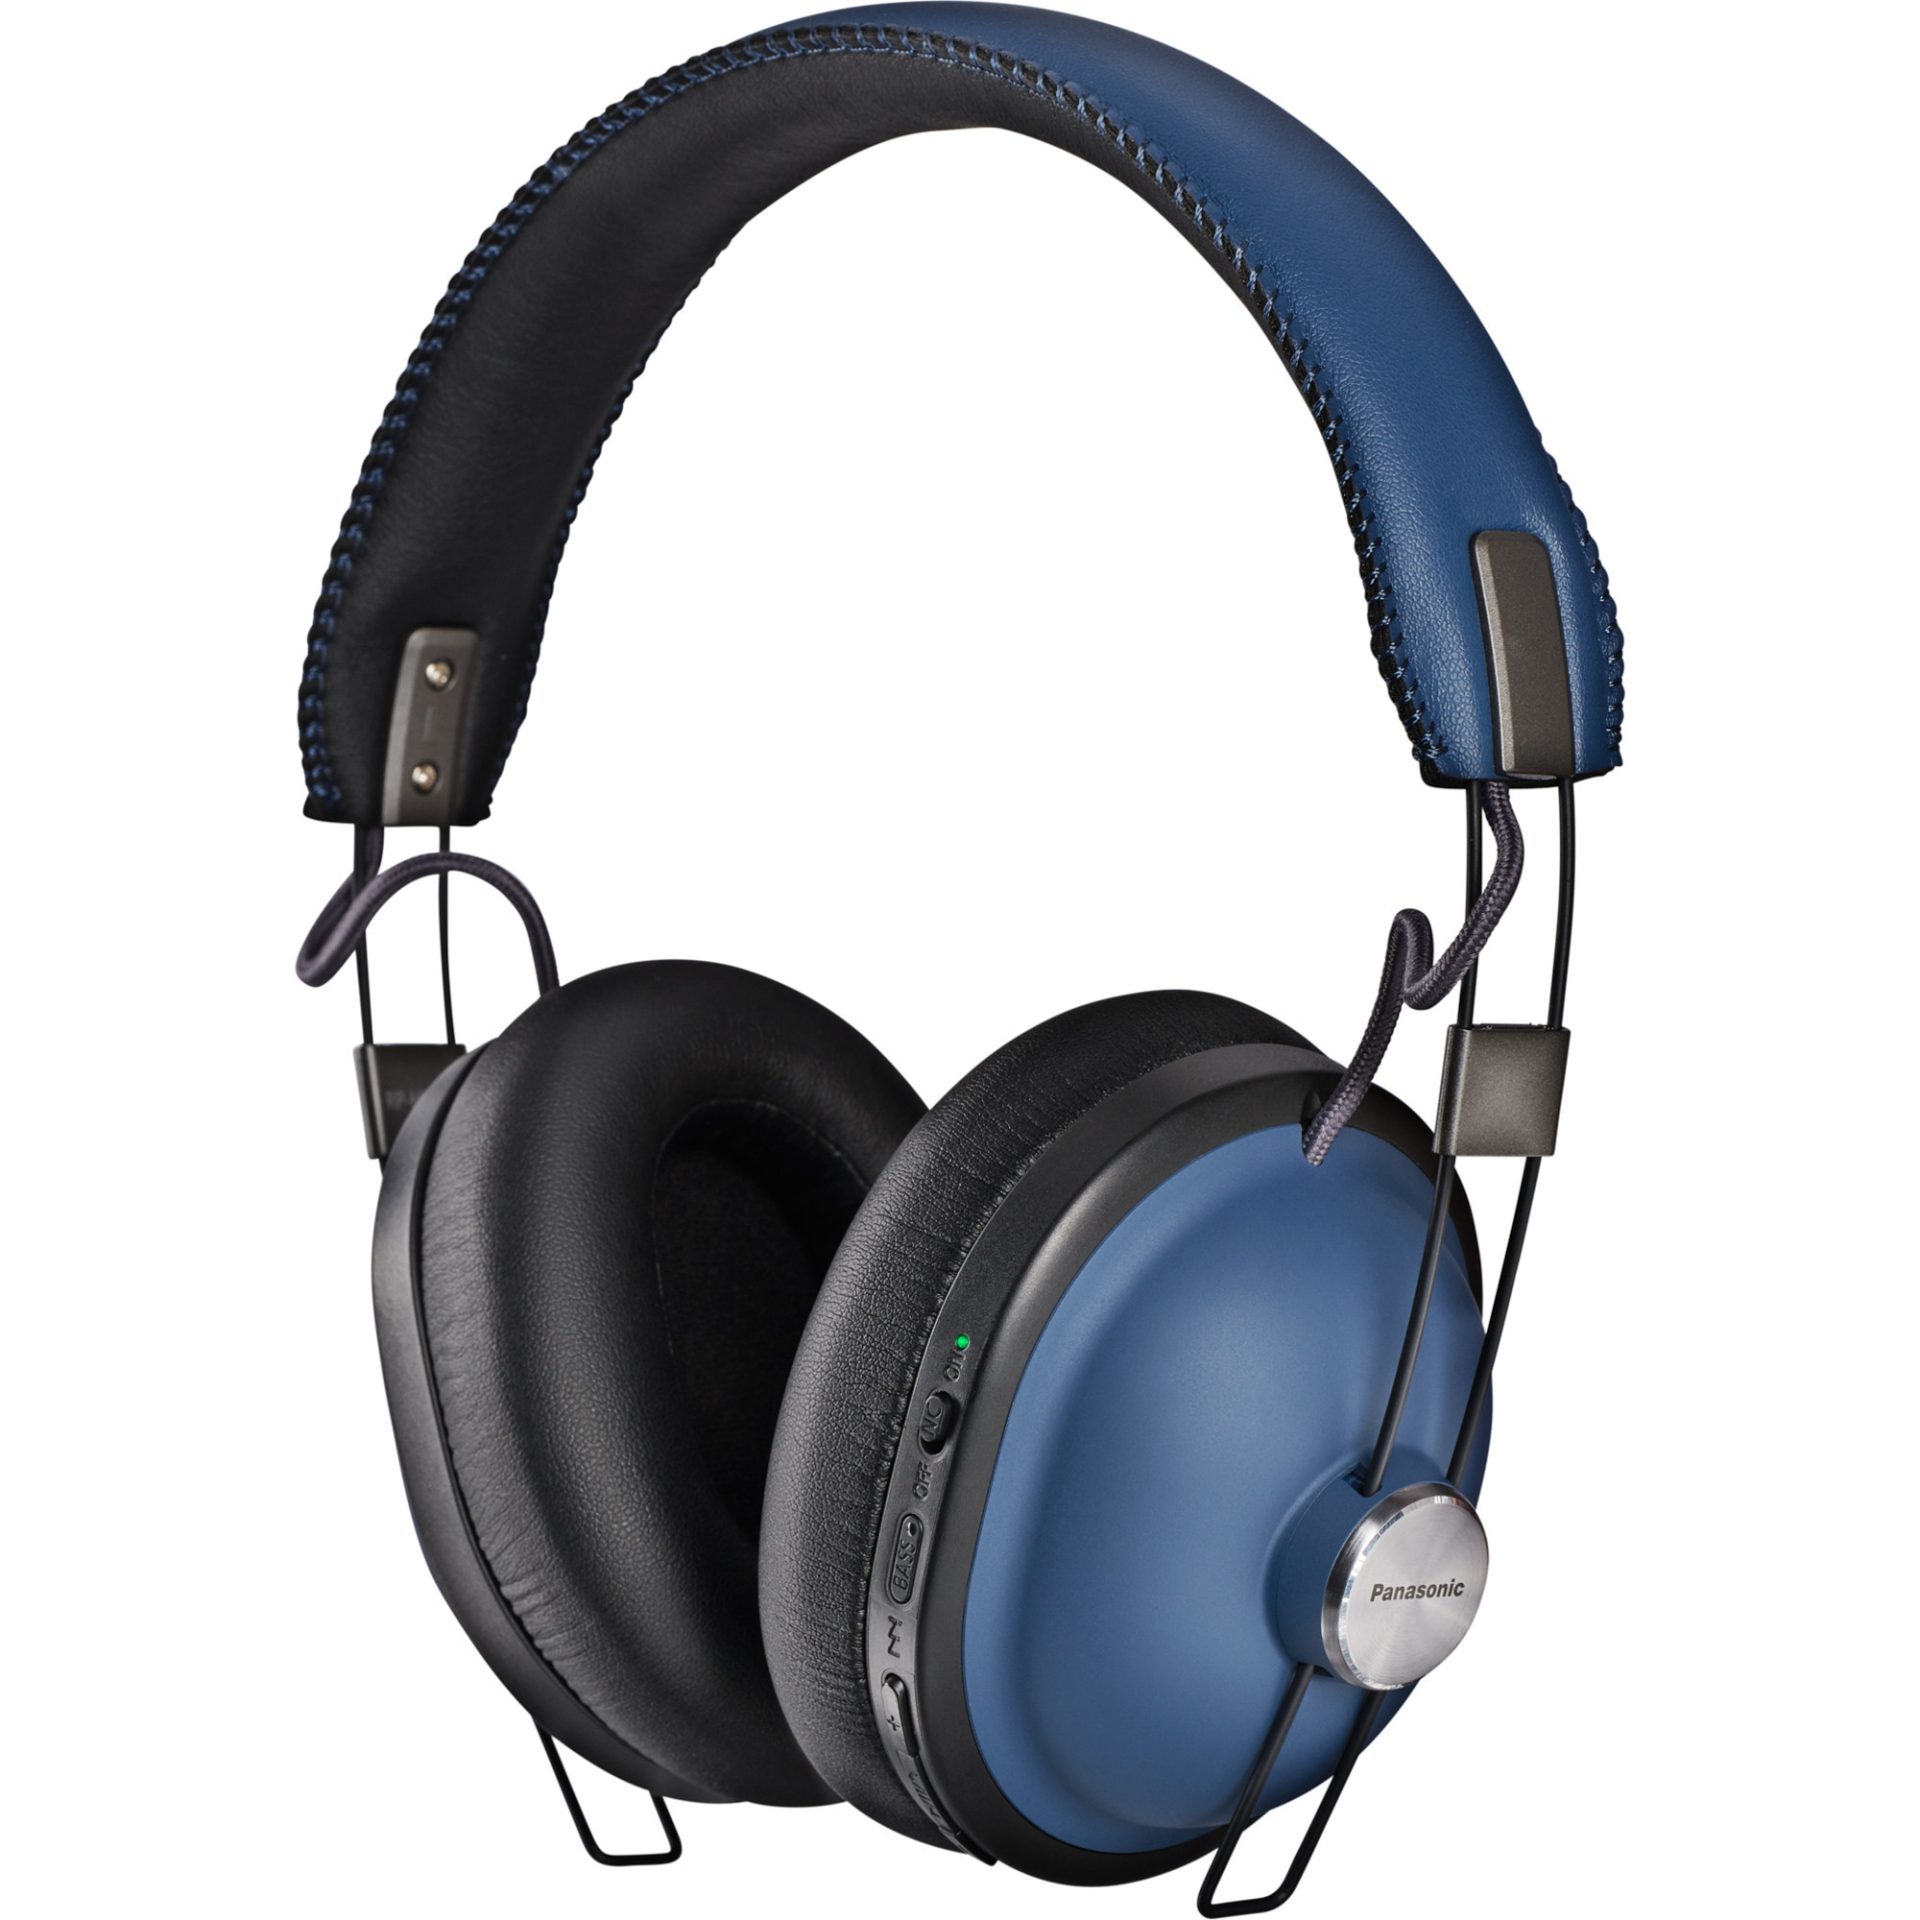 Panasonic RP-HTX90 bezdrátová Bluetooth sluchátka přes uši v retro stylu (redukce šumu, 40mm reproduktory, Acoustic Bass Control, 24h práce), námořnic